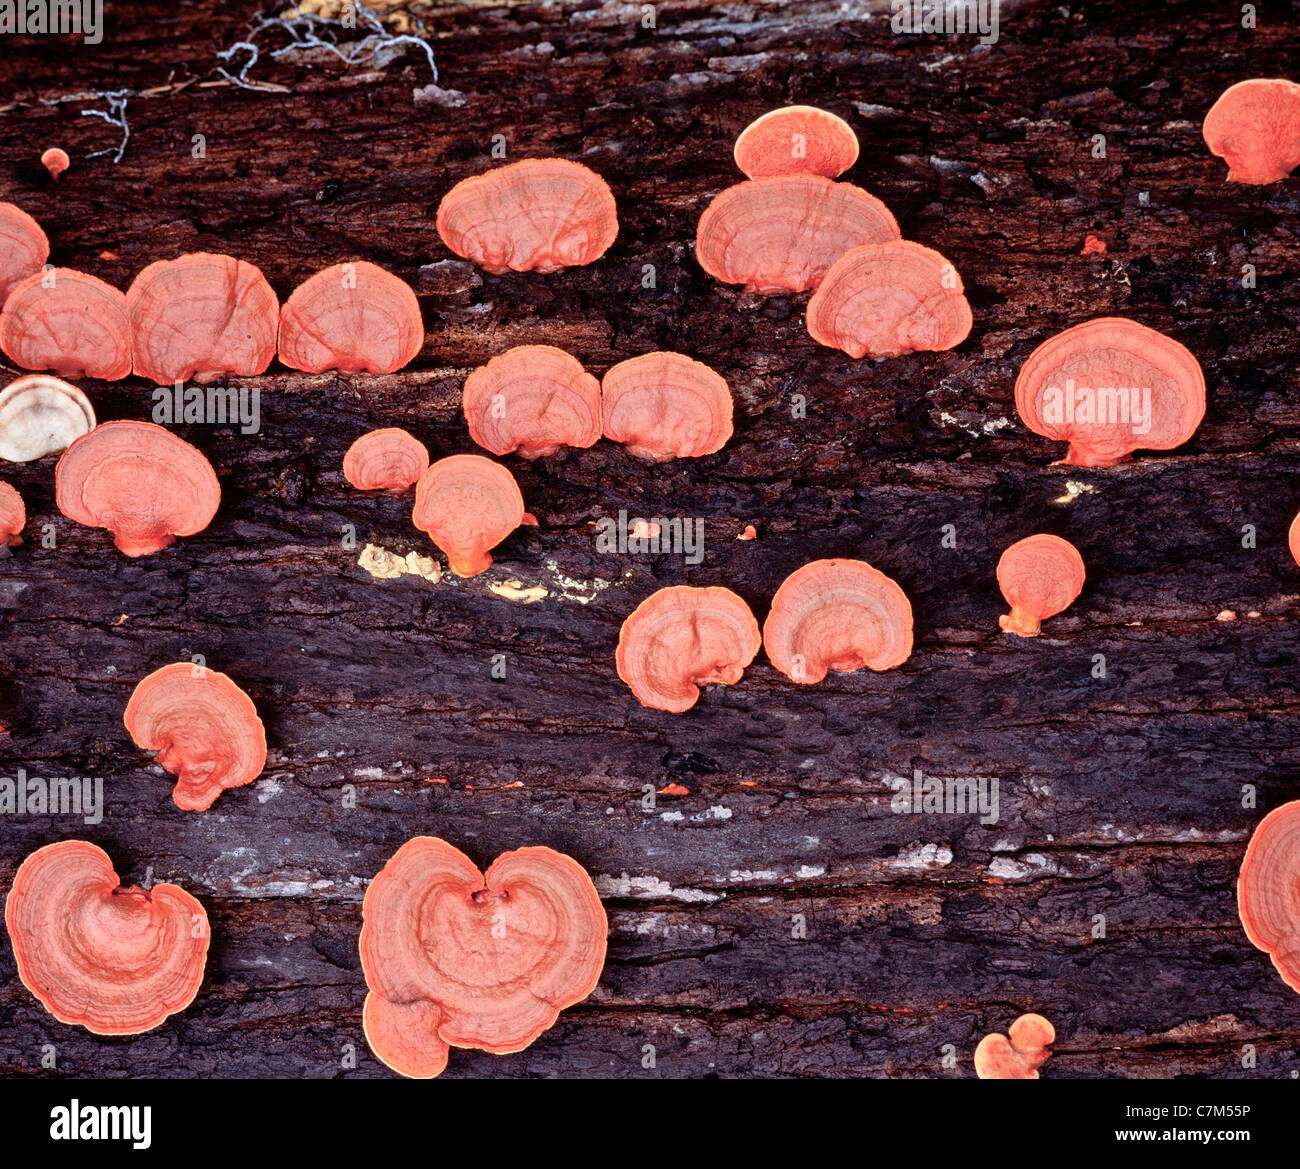 Scieries de champignons poussant sur le sol forestier, Mulu National Park, Sarawak, Bornéo, Malaisie Orientale Banque D'Images